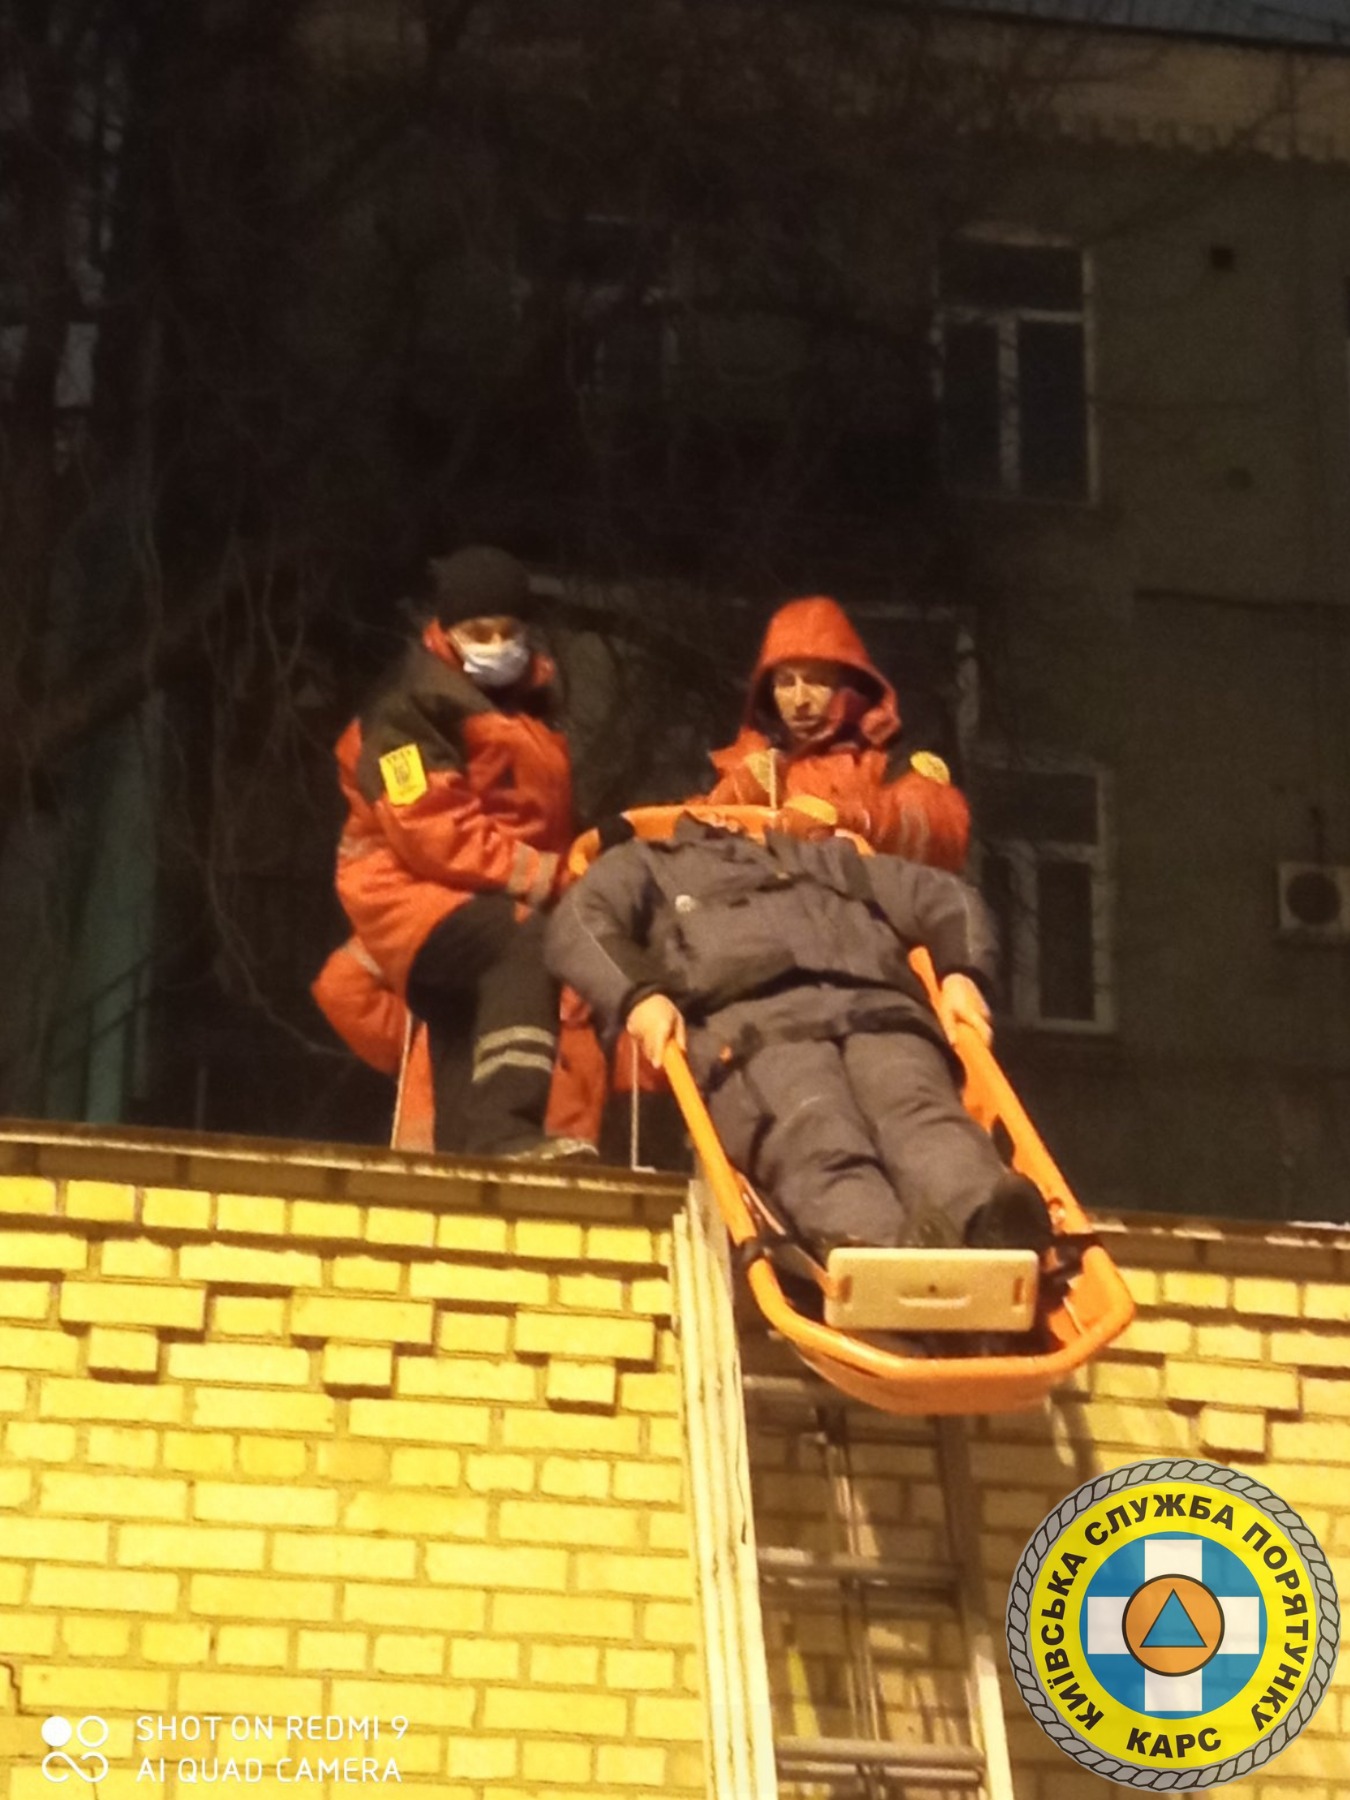 В Киеве спасатели чуть не добили пострадавшего: уронили с высоты носилки с мужчиной (видео)